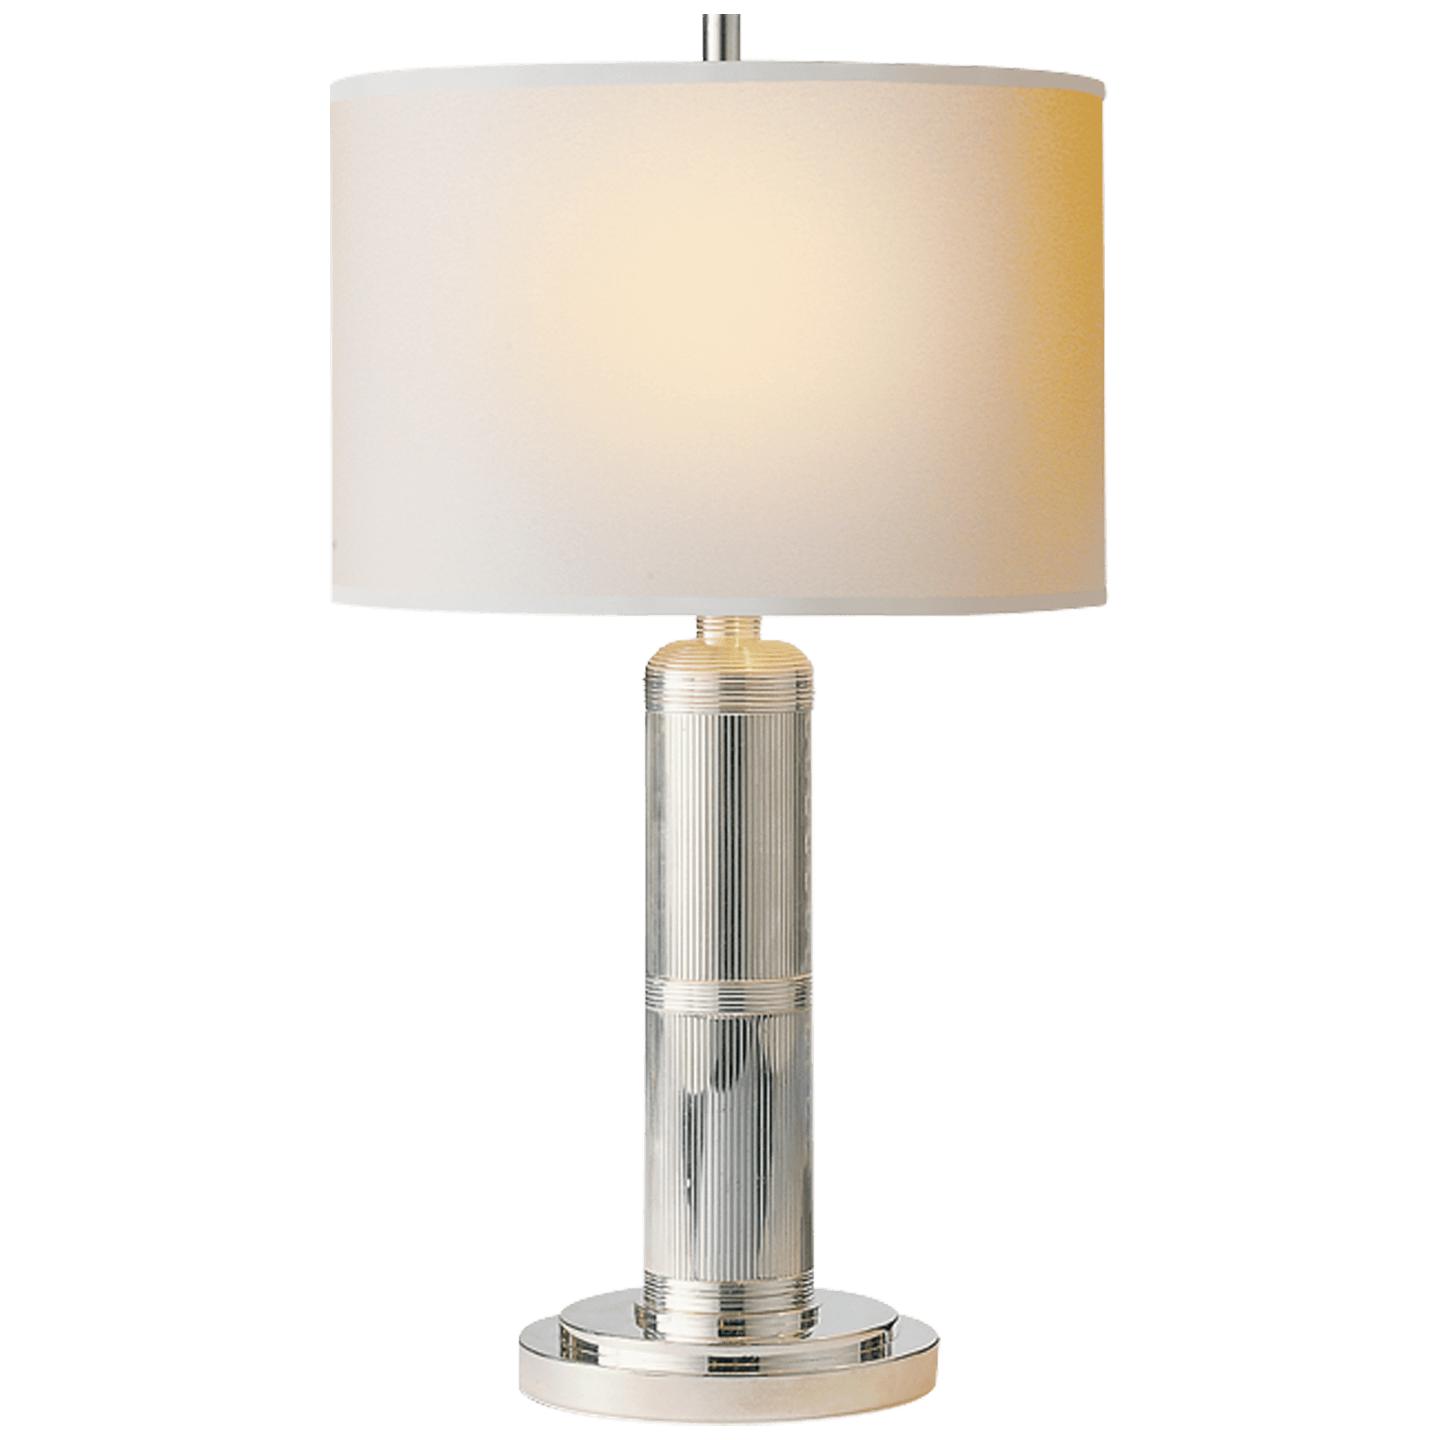 Купить Настольная лампа Longacre Small Table Lamp в интернет-магазине roooms.ru